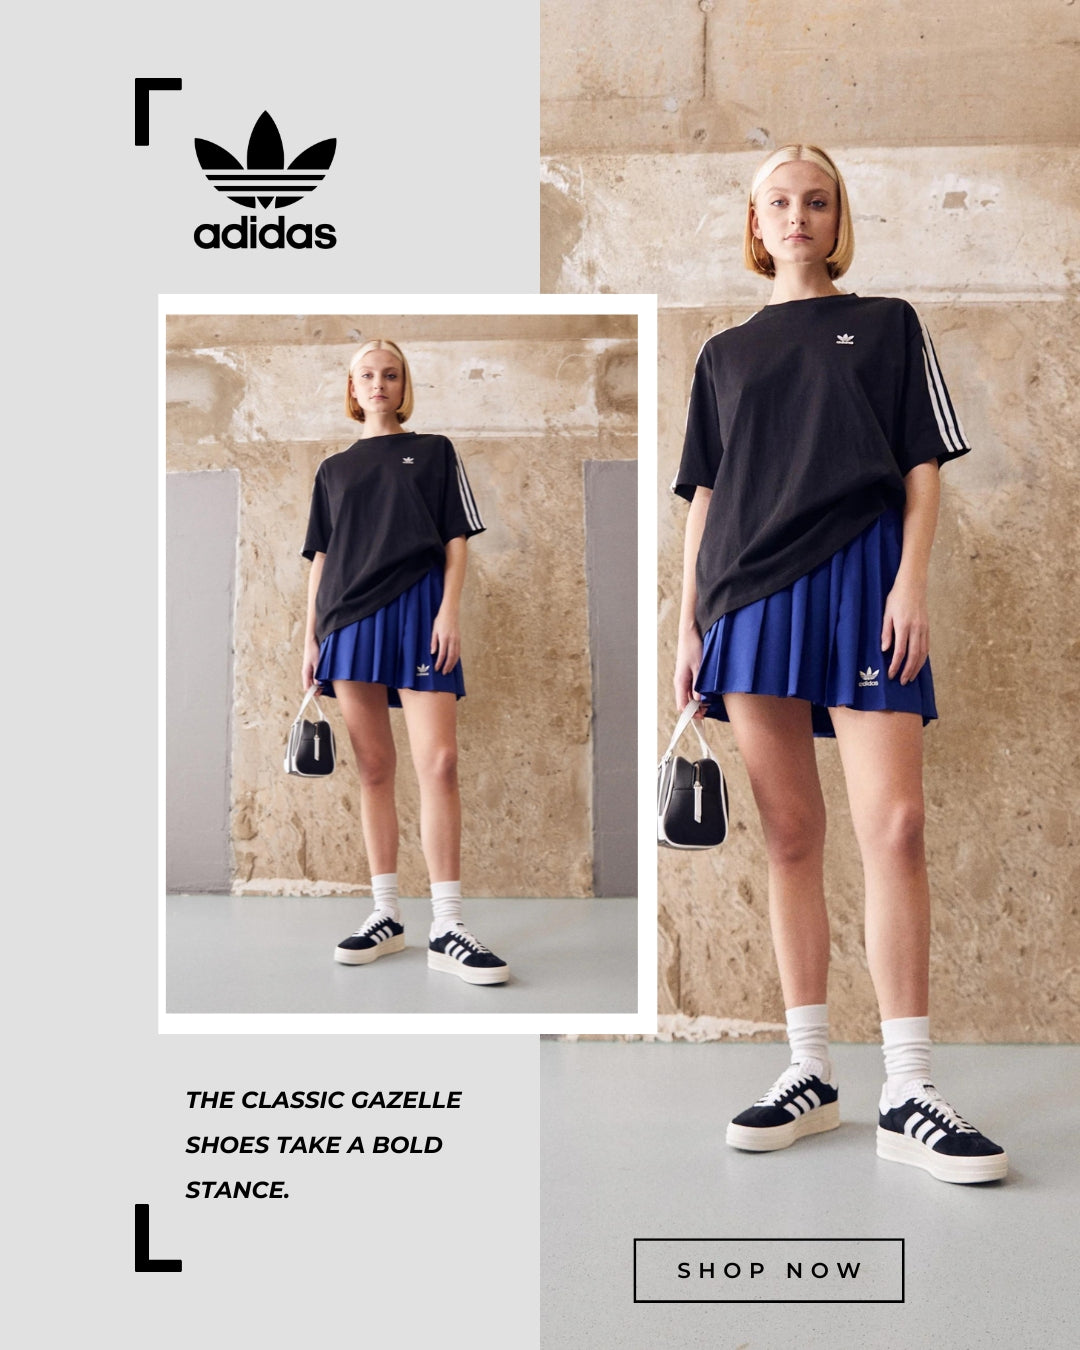 Adidas Originals Gazelle Bold